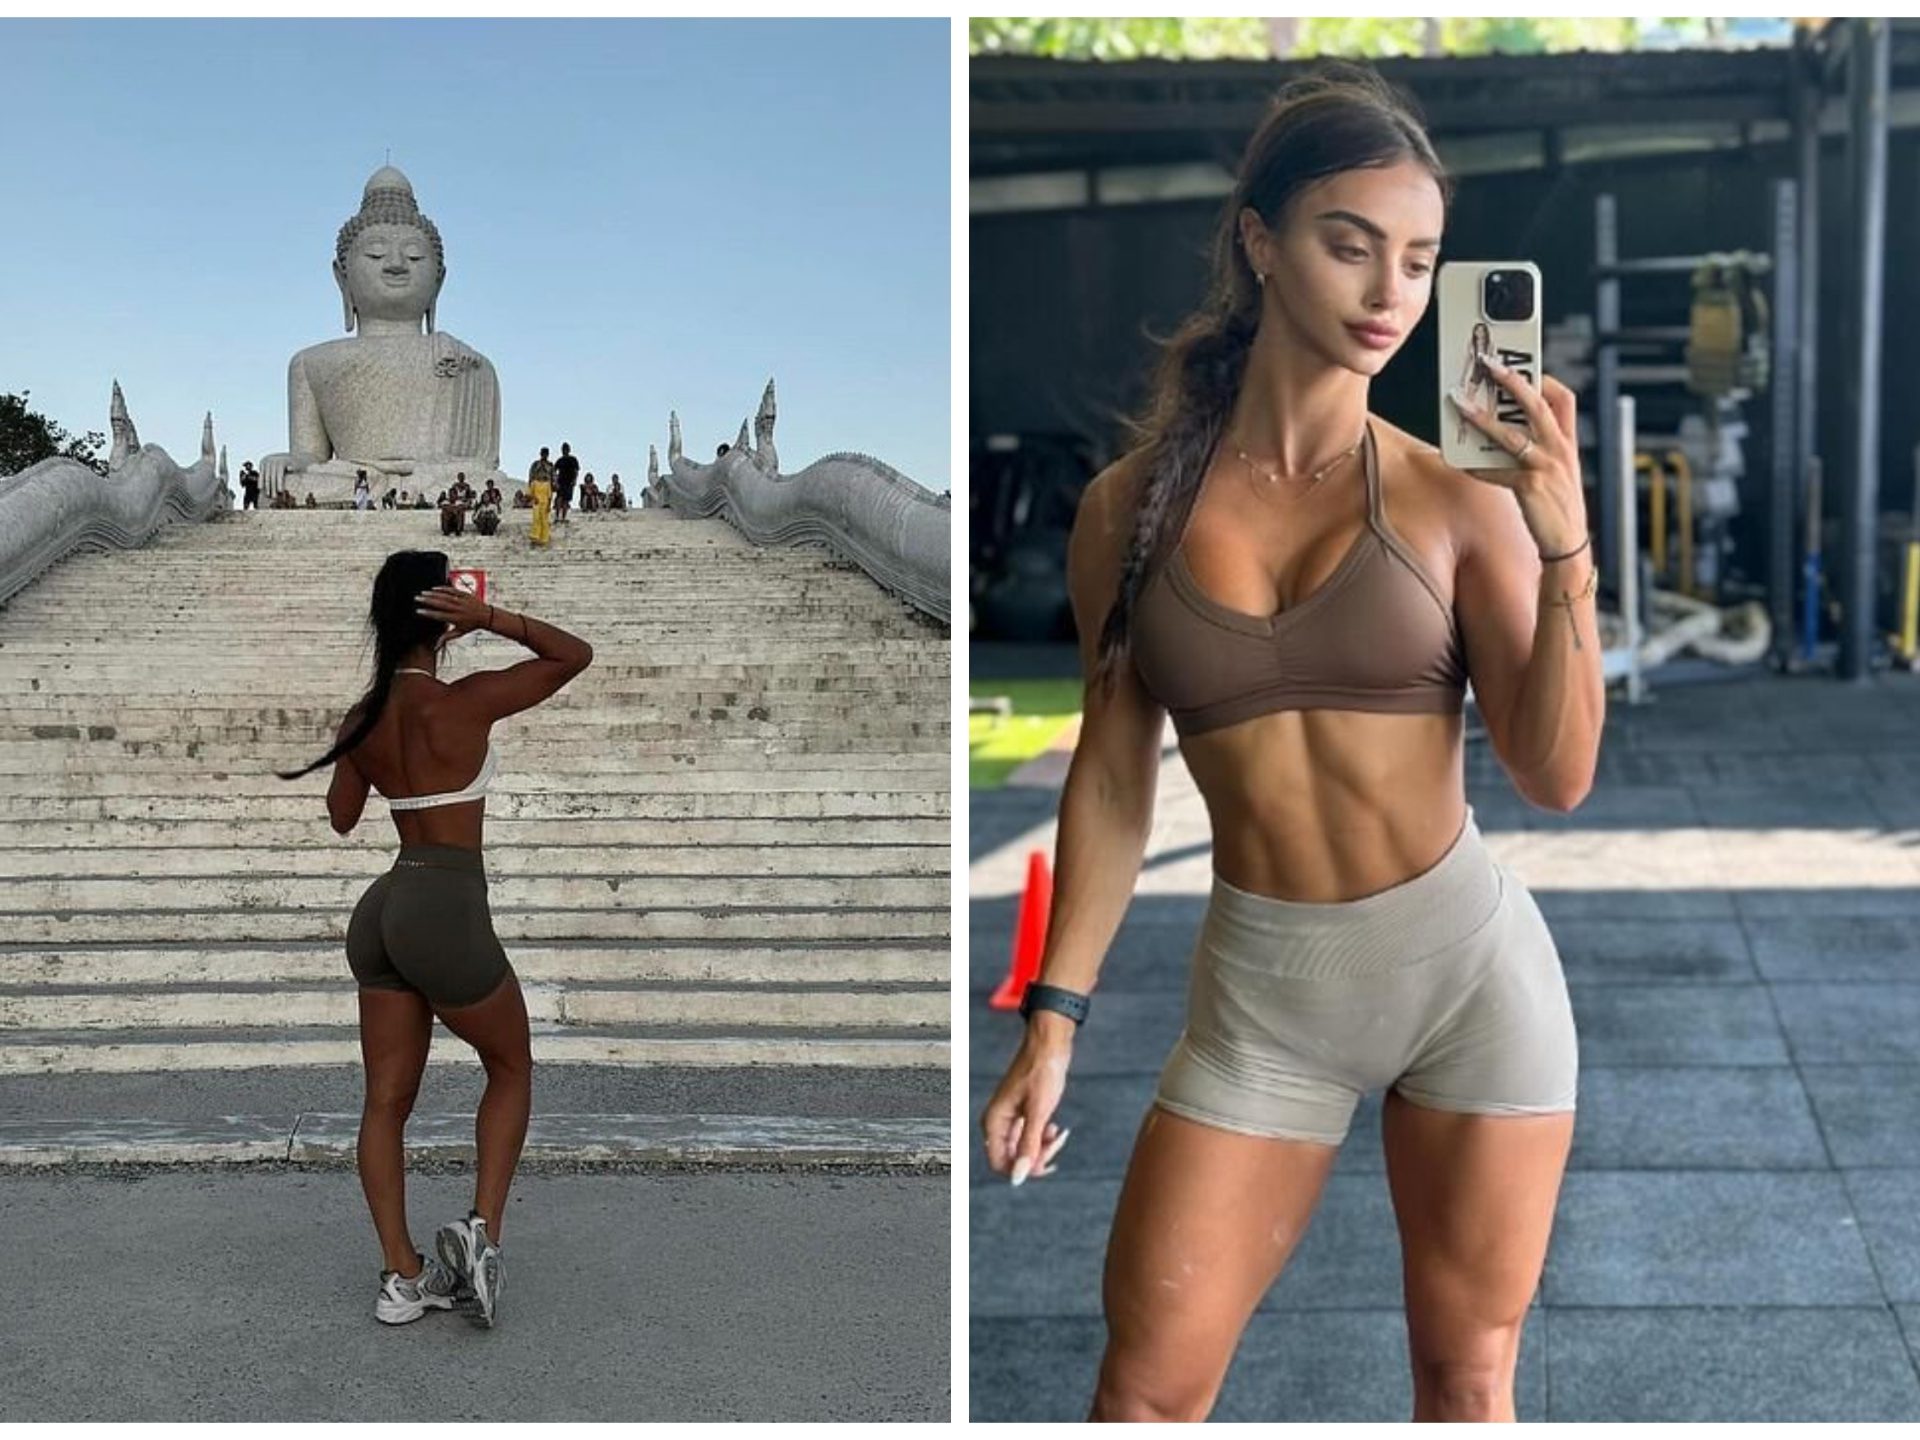 Influencer se toma fotos sexys frente a Buda: expulsada de Instagram